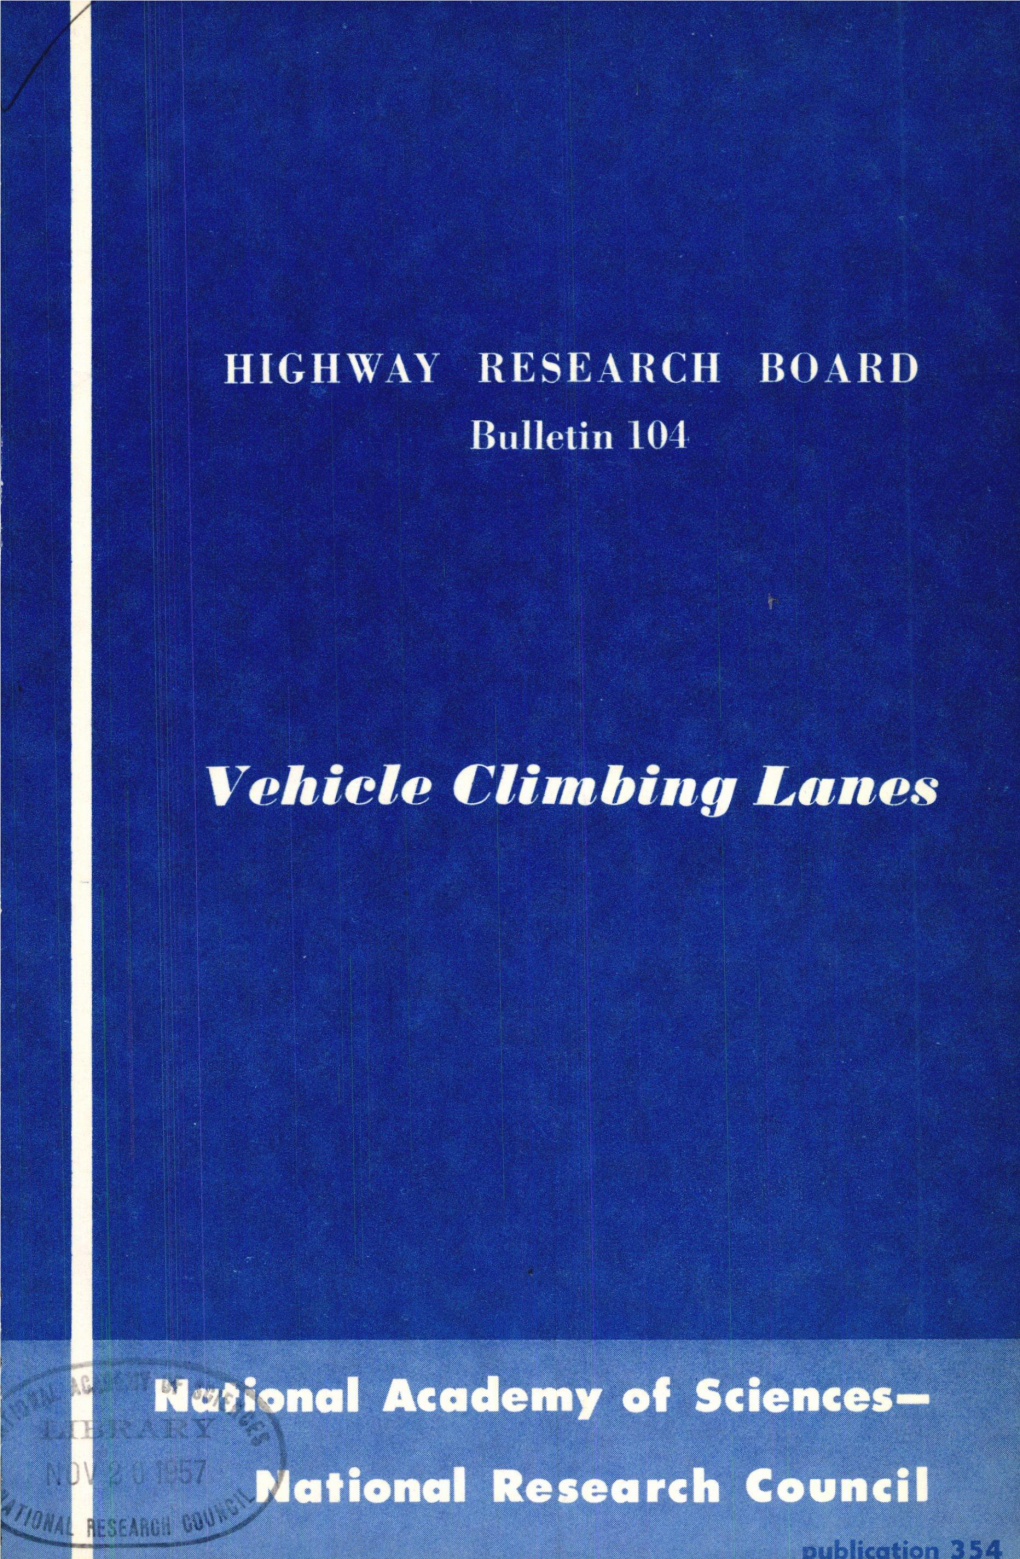 Vehicle Climbing Lanes